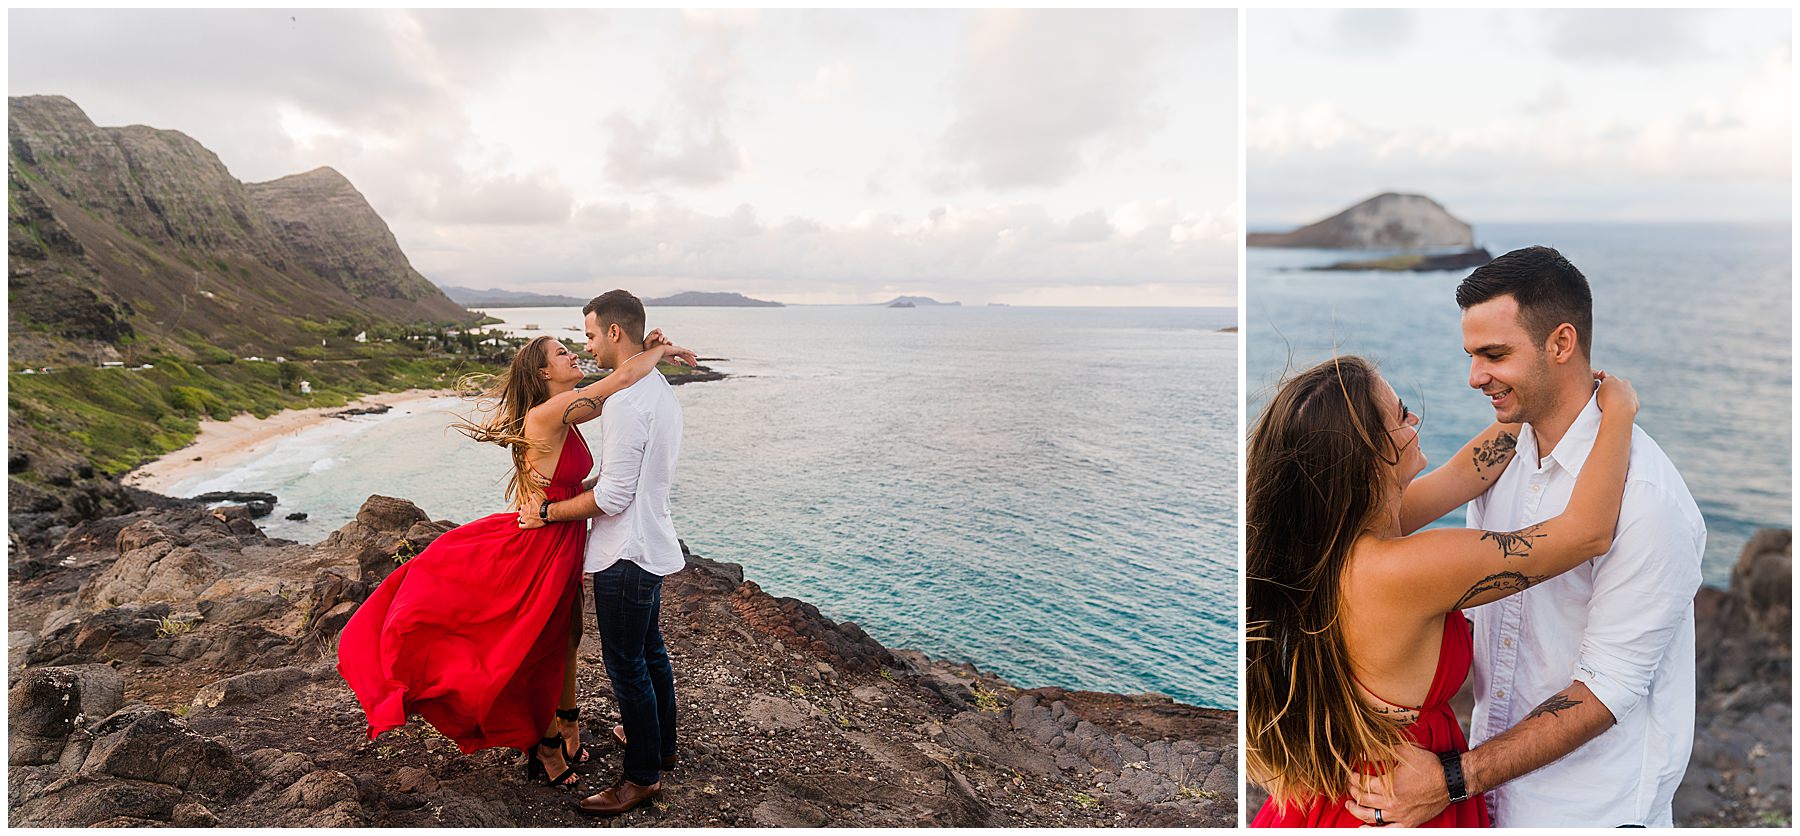 Hawaii engagement photographer photos at Makapuu Lookout